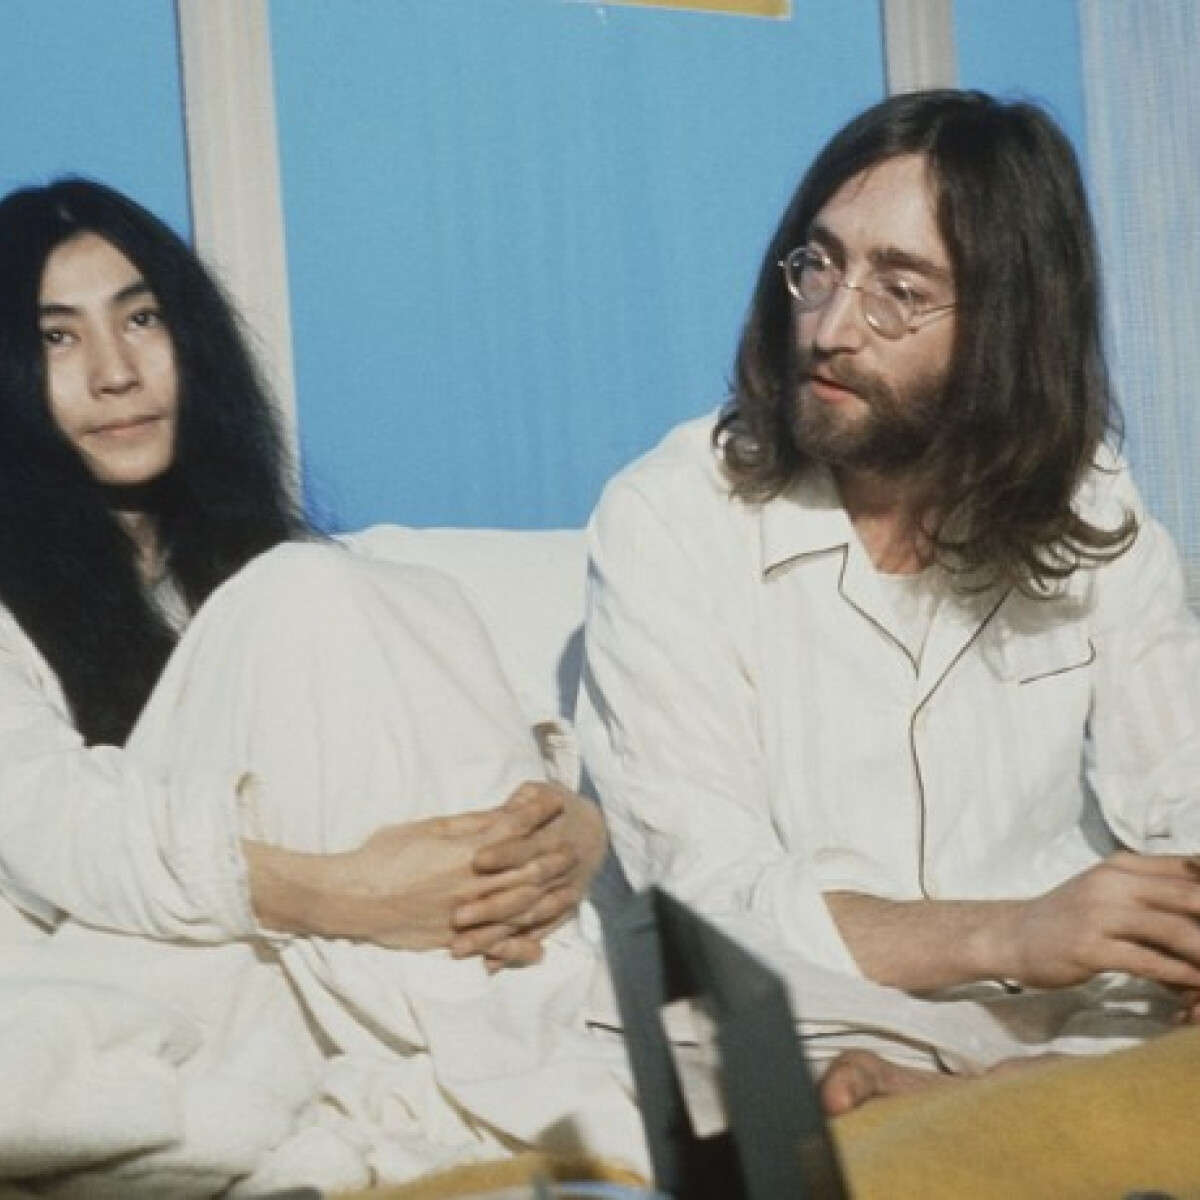 Kíváncsi vagy John Lennon és Yoko Ono egykori otthonára? – Biztos, hogy nem erre számítottál